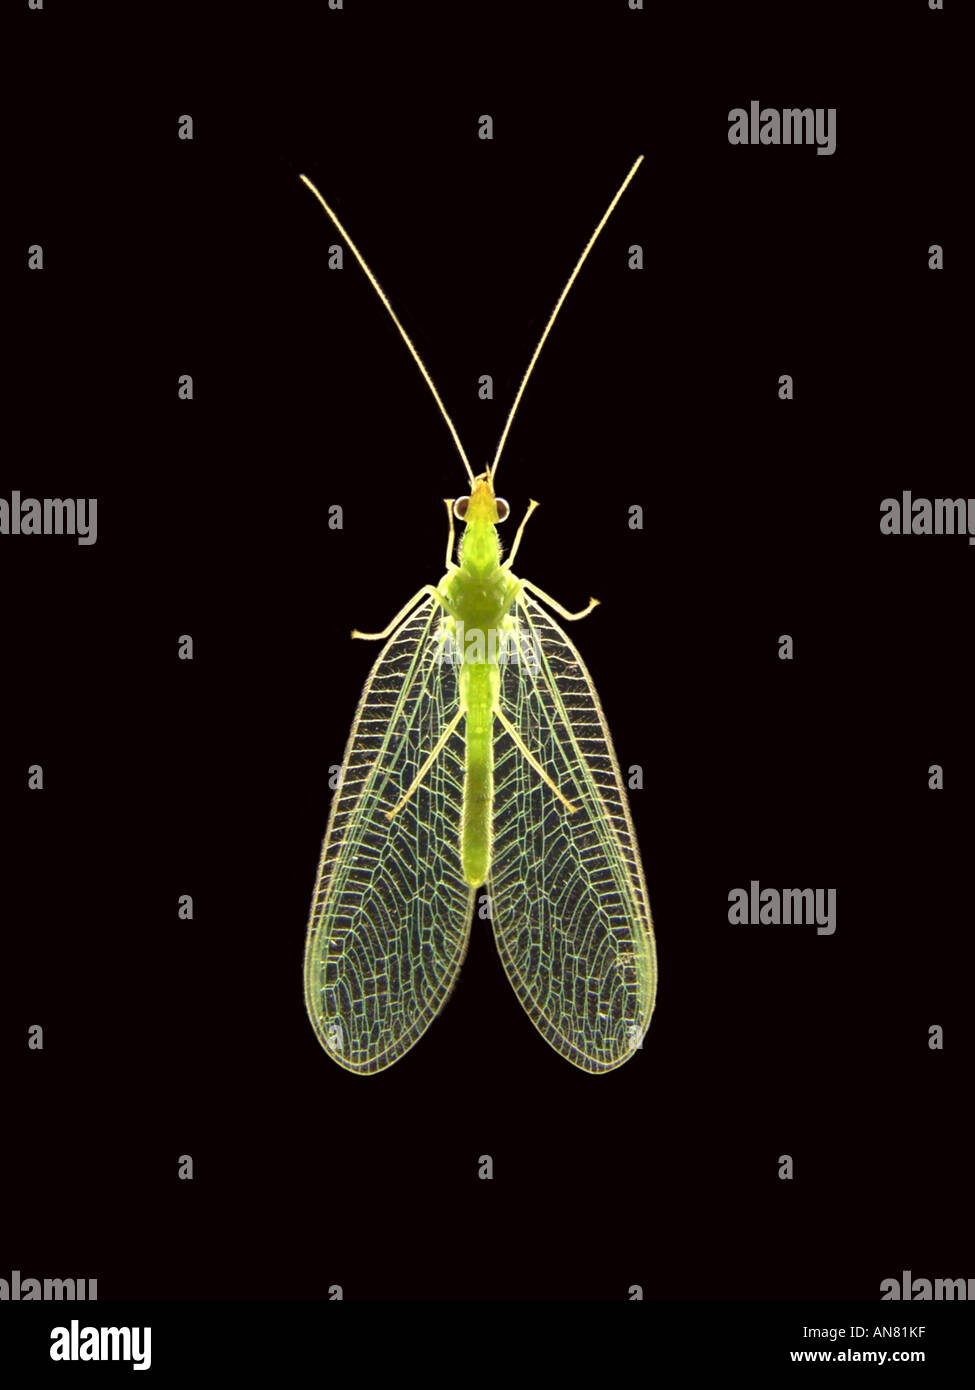 La chrysope verte (Chrysoperla carnea, Anisochrysa, Chrysopa carnea carnea), dans shining-à travers la lumière Banque D'Images